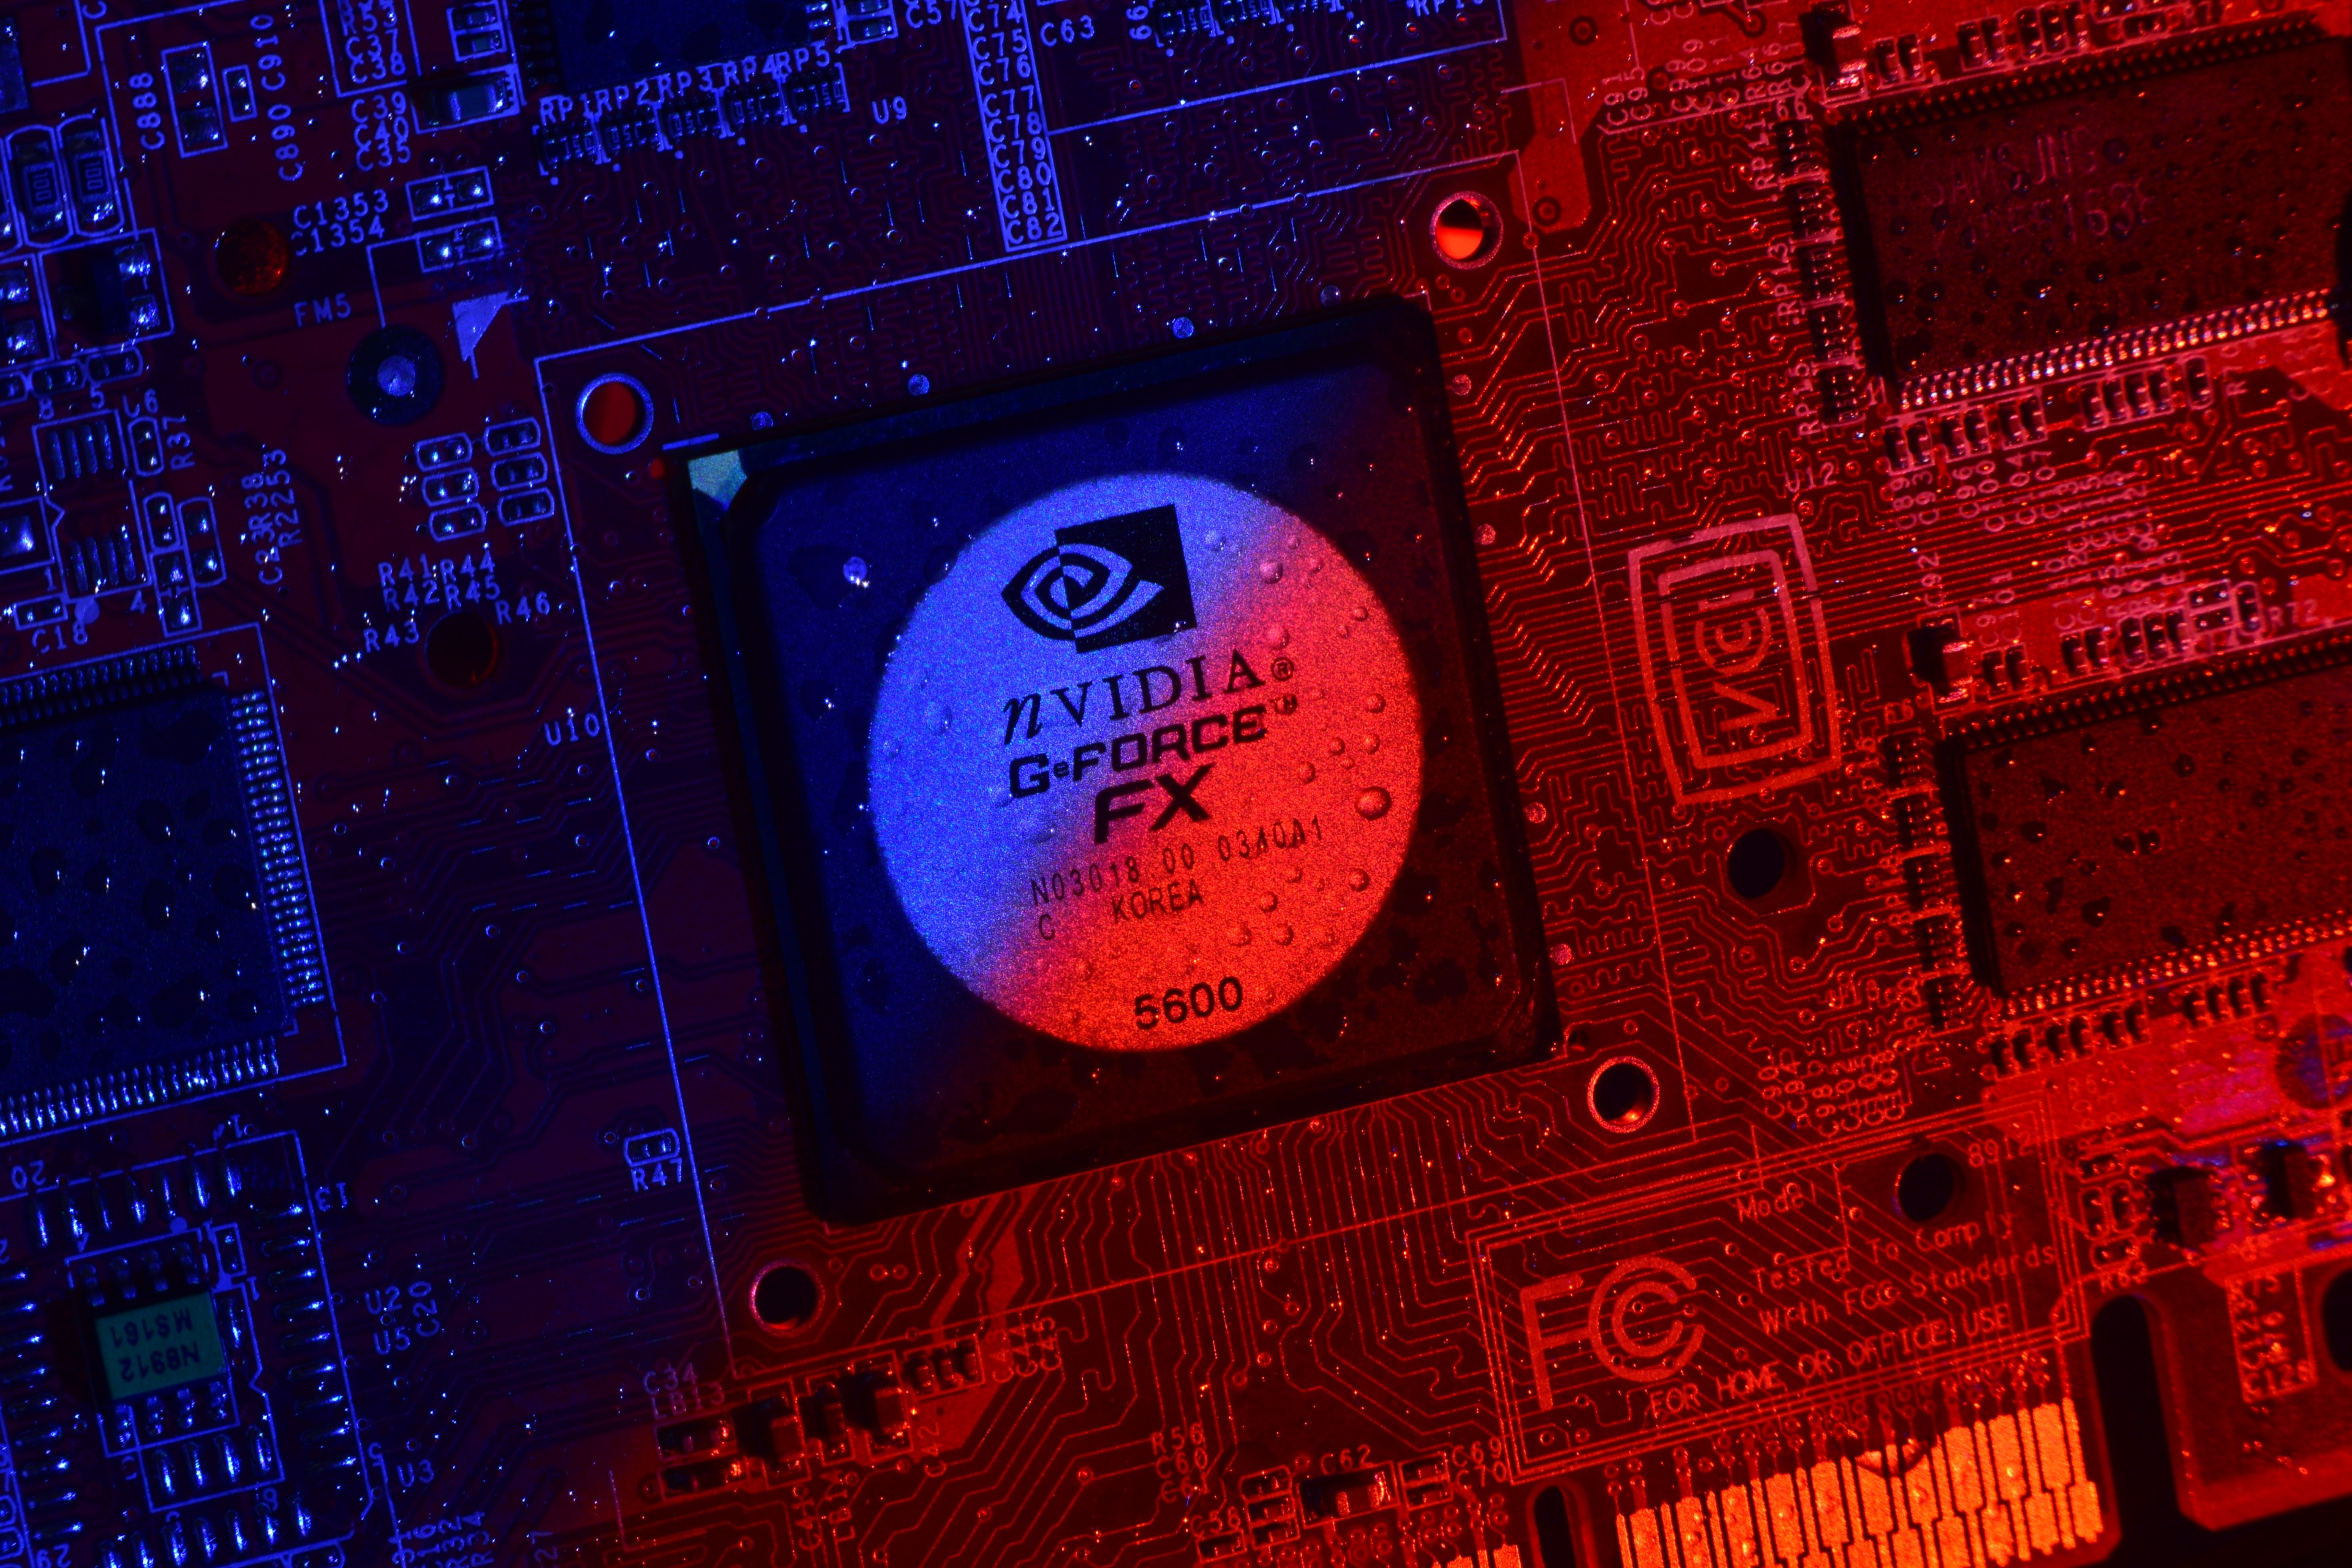 Effekte Geforce FX 5600 (28).JPG